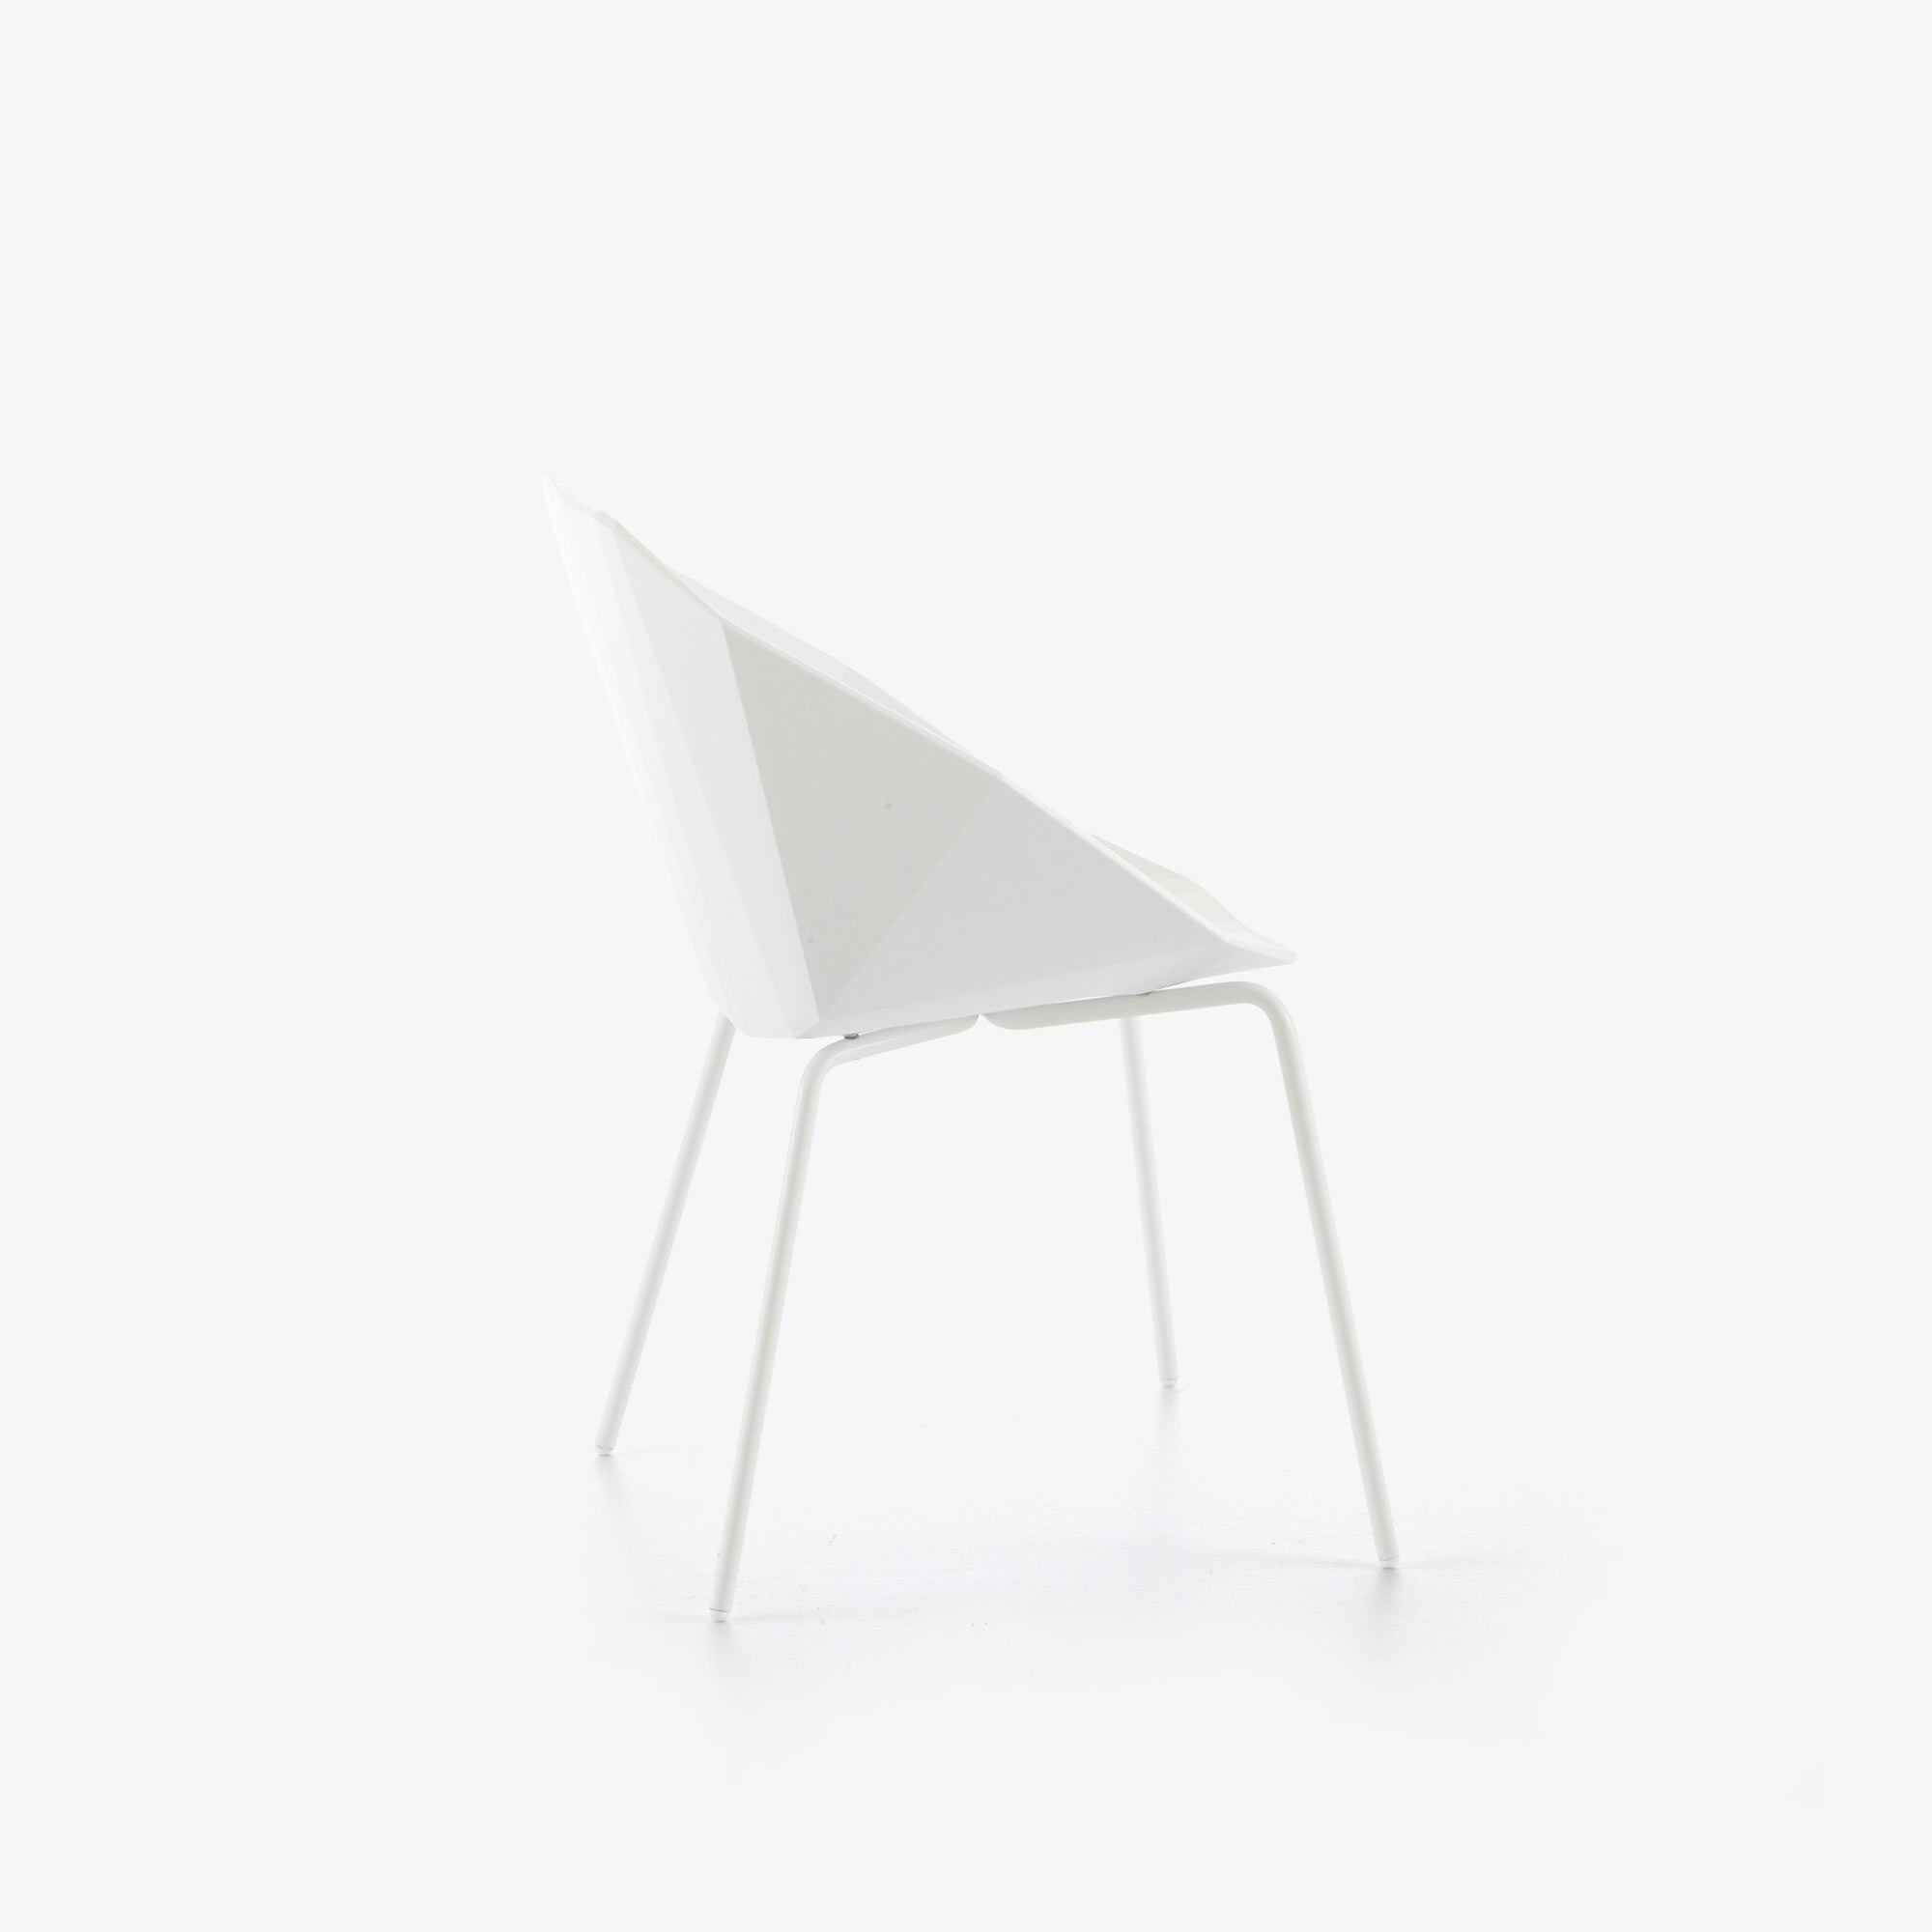 Image 椅子/桥形结构 白色 白色水性漆底座 4